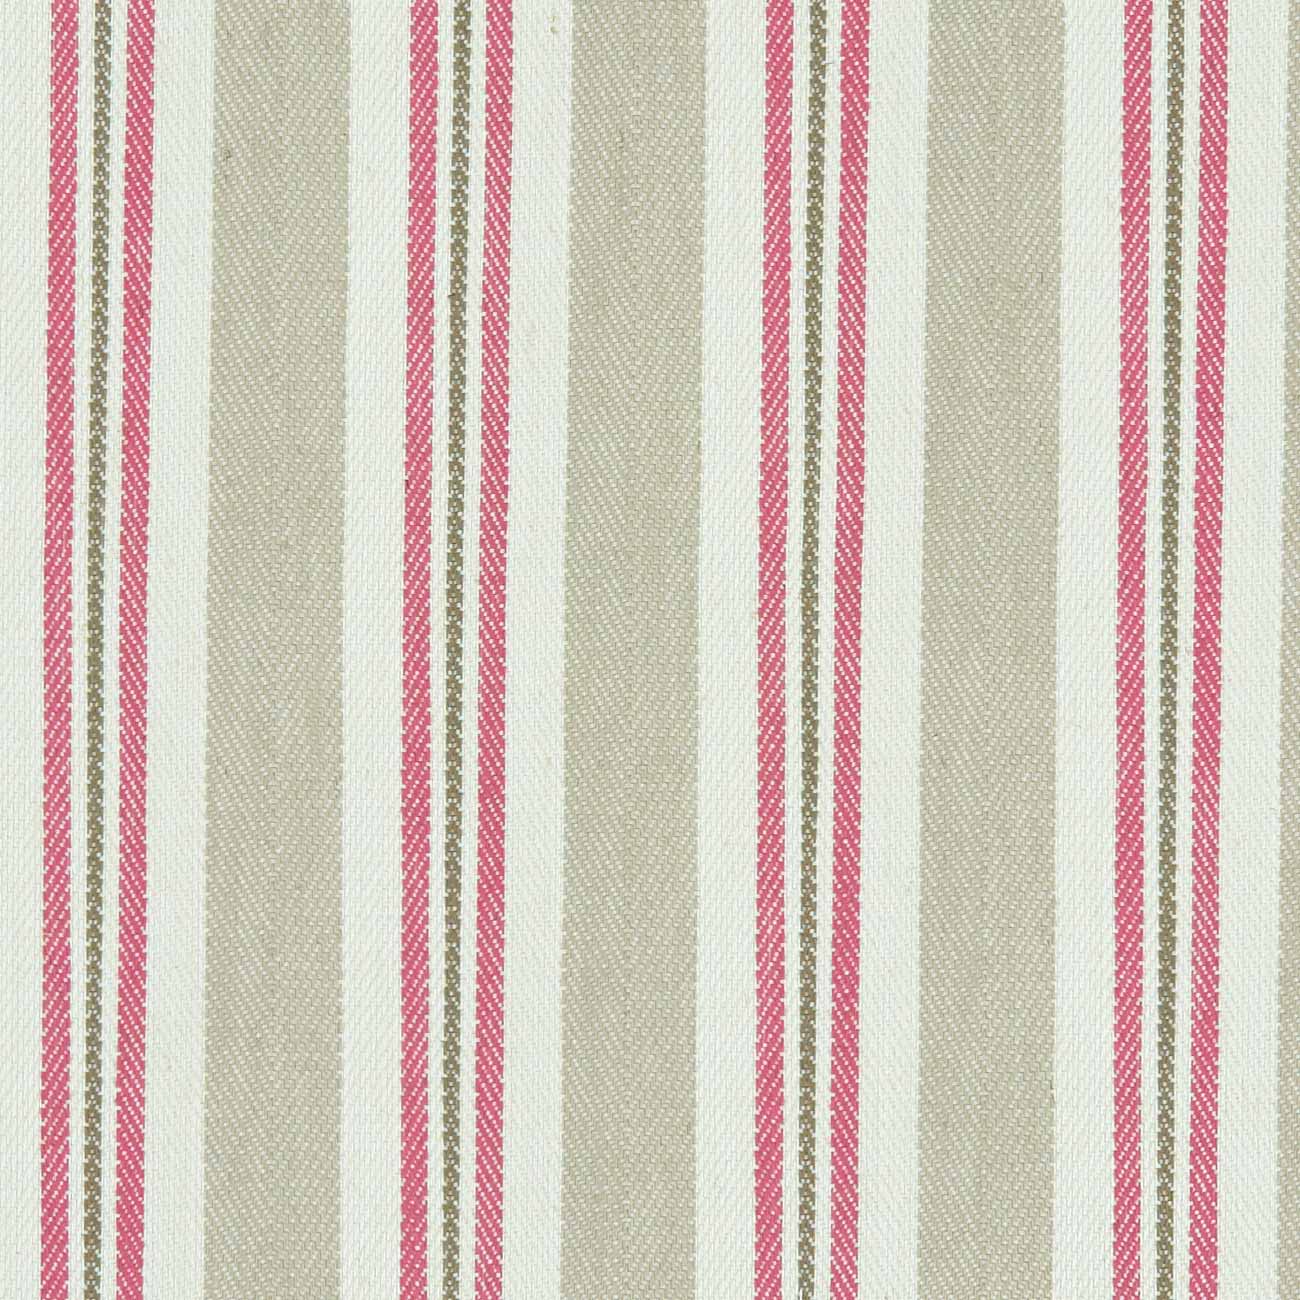 Alderton Raspberry/Linen Fabric by Clarke & Clarke